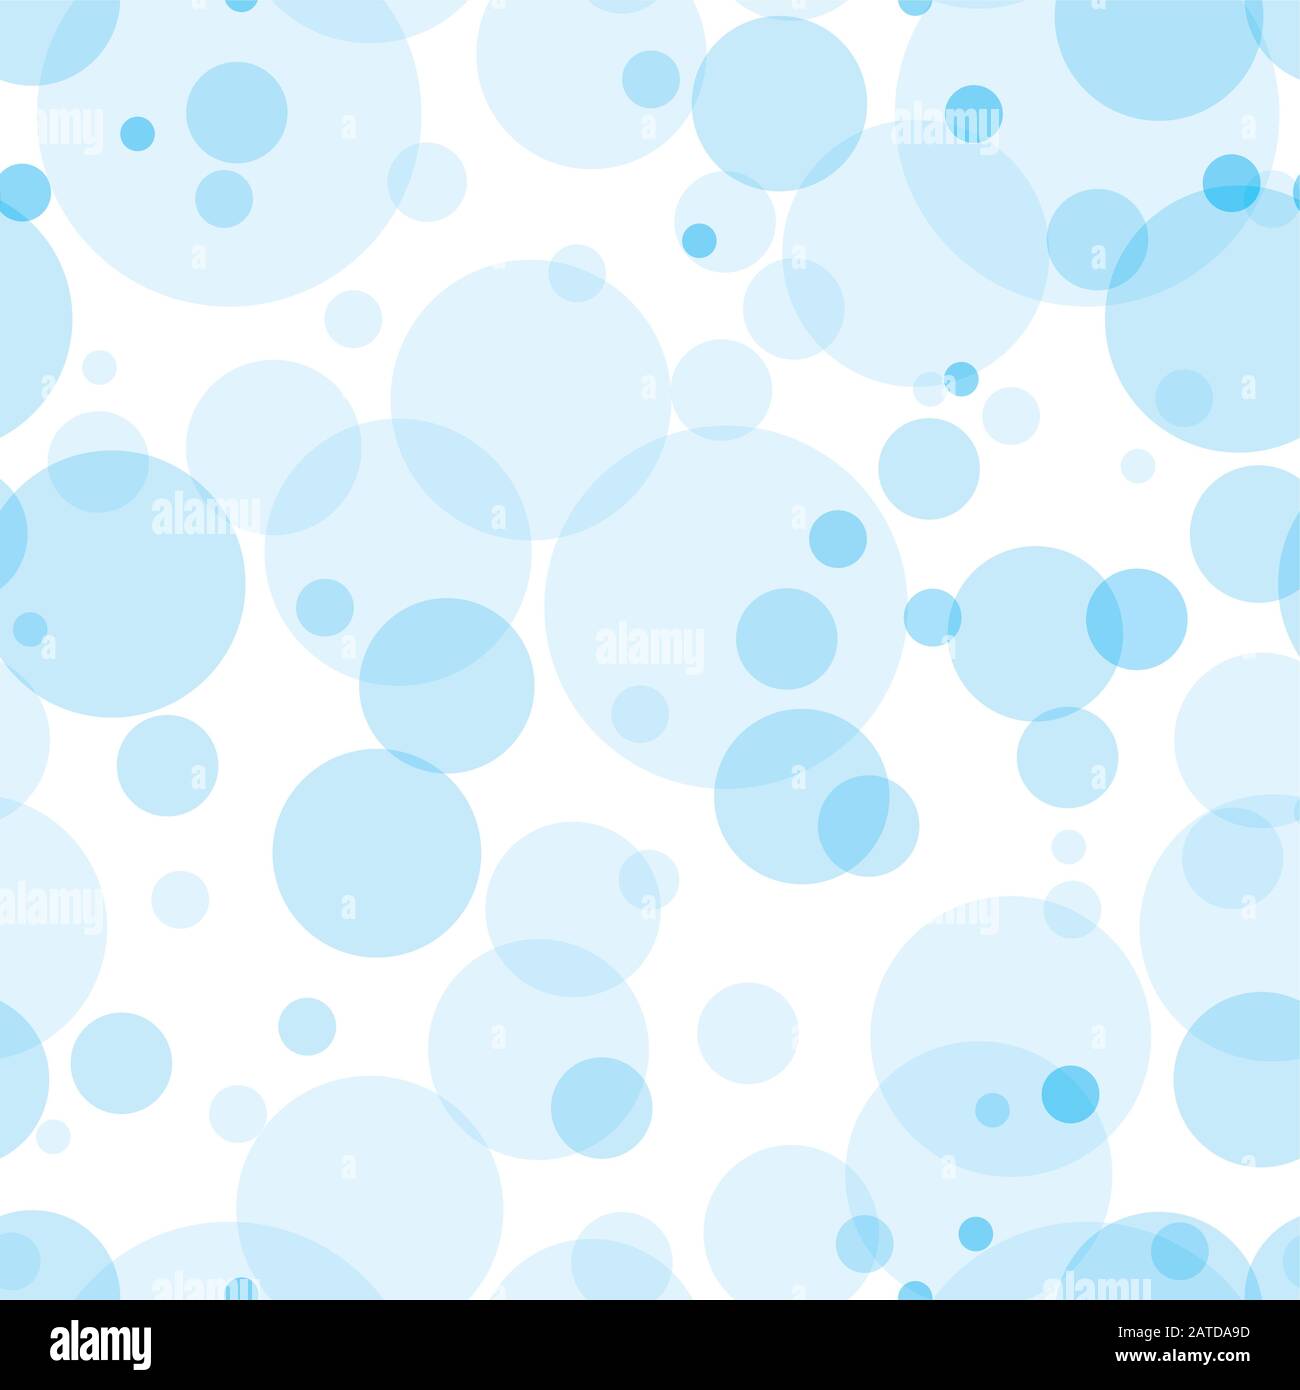 Círculos transparentes patrón sin costuras. Burbujas de azul cielo colocadas aleatoriamente sobre fondo blanco. Ilustración fácil de editar de vectores eps10. Ilustración del Vector